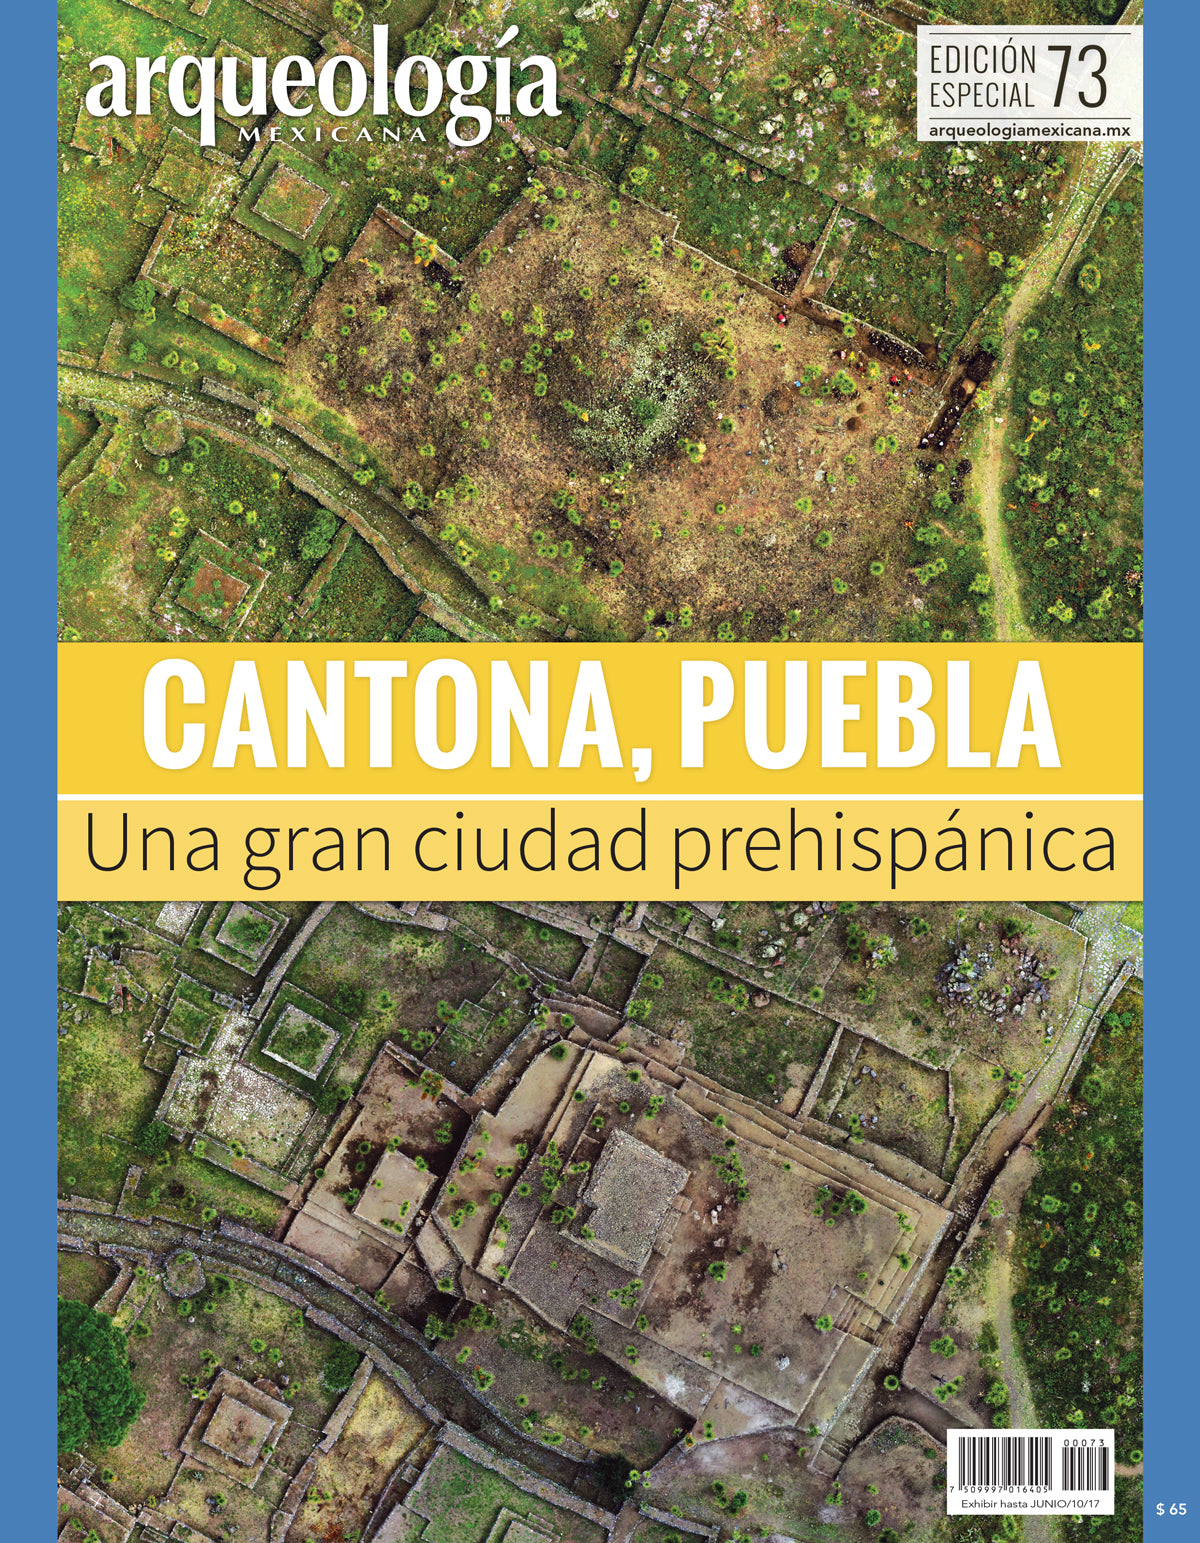 Cantona, Puebla